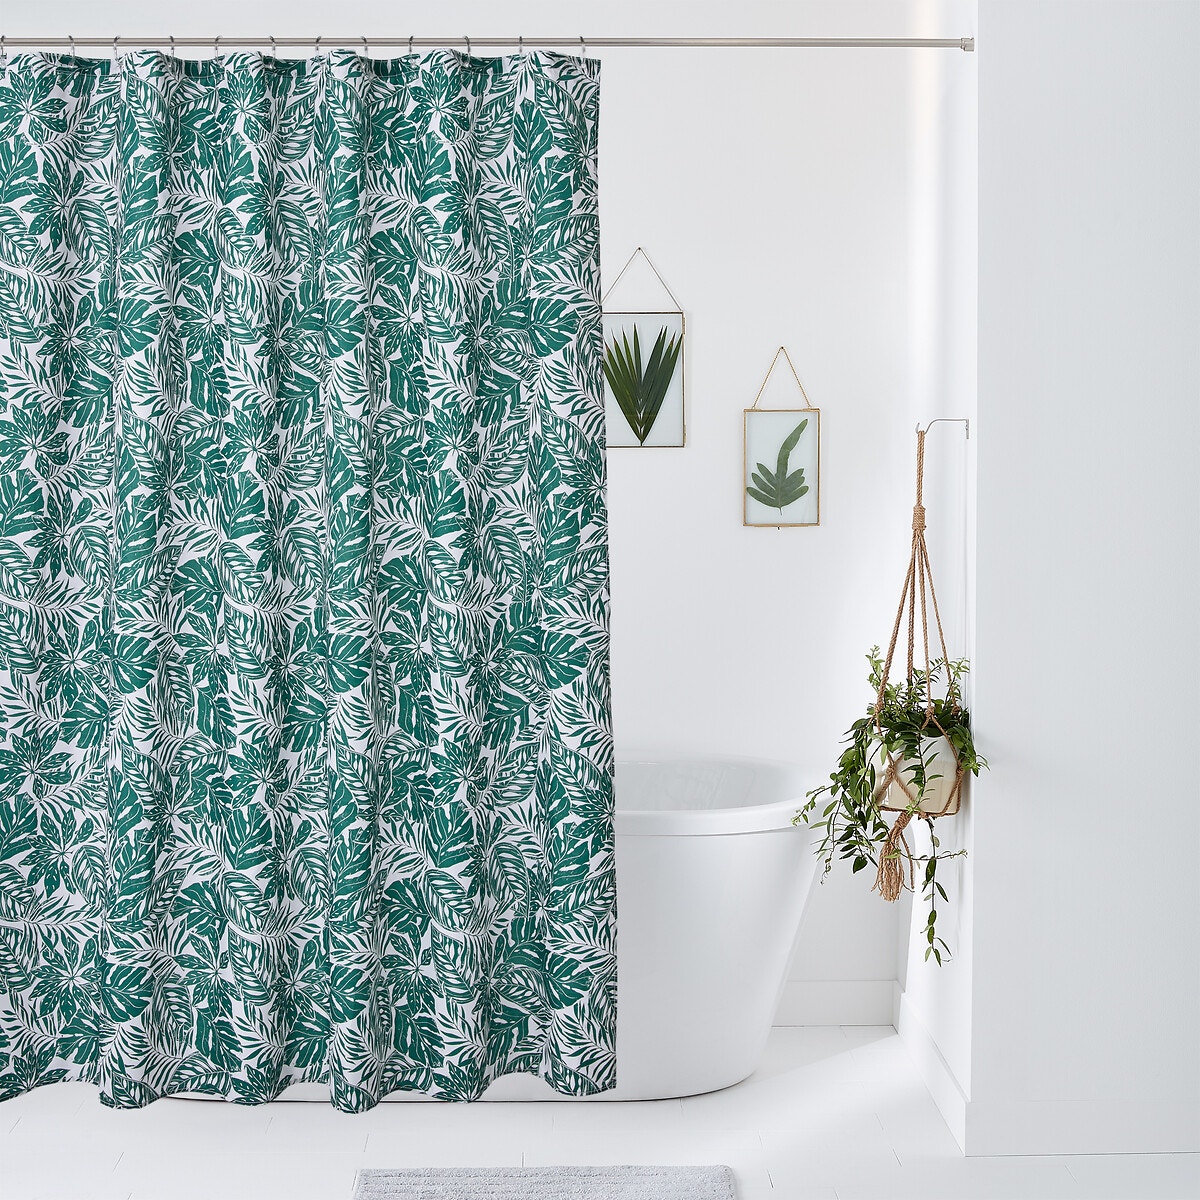 Σπίτι > Λευκά είδη > Μπάνιο > Κουρτίνες μπάνιου Κουρτίνα μπάνιου 200x180 cm